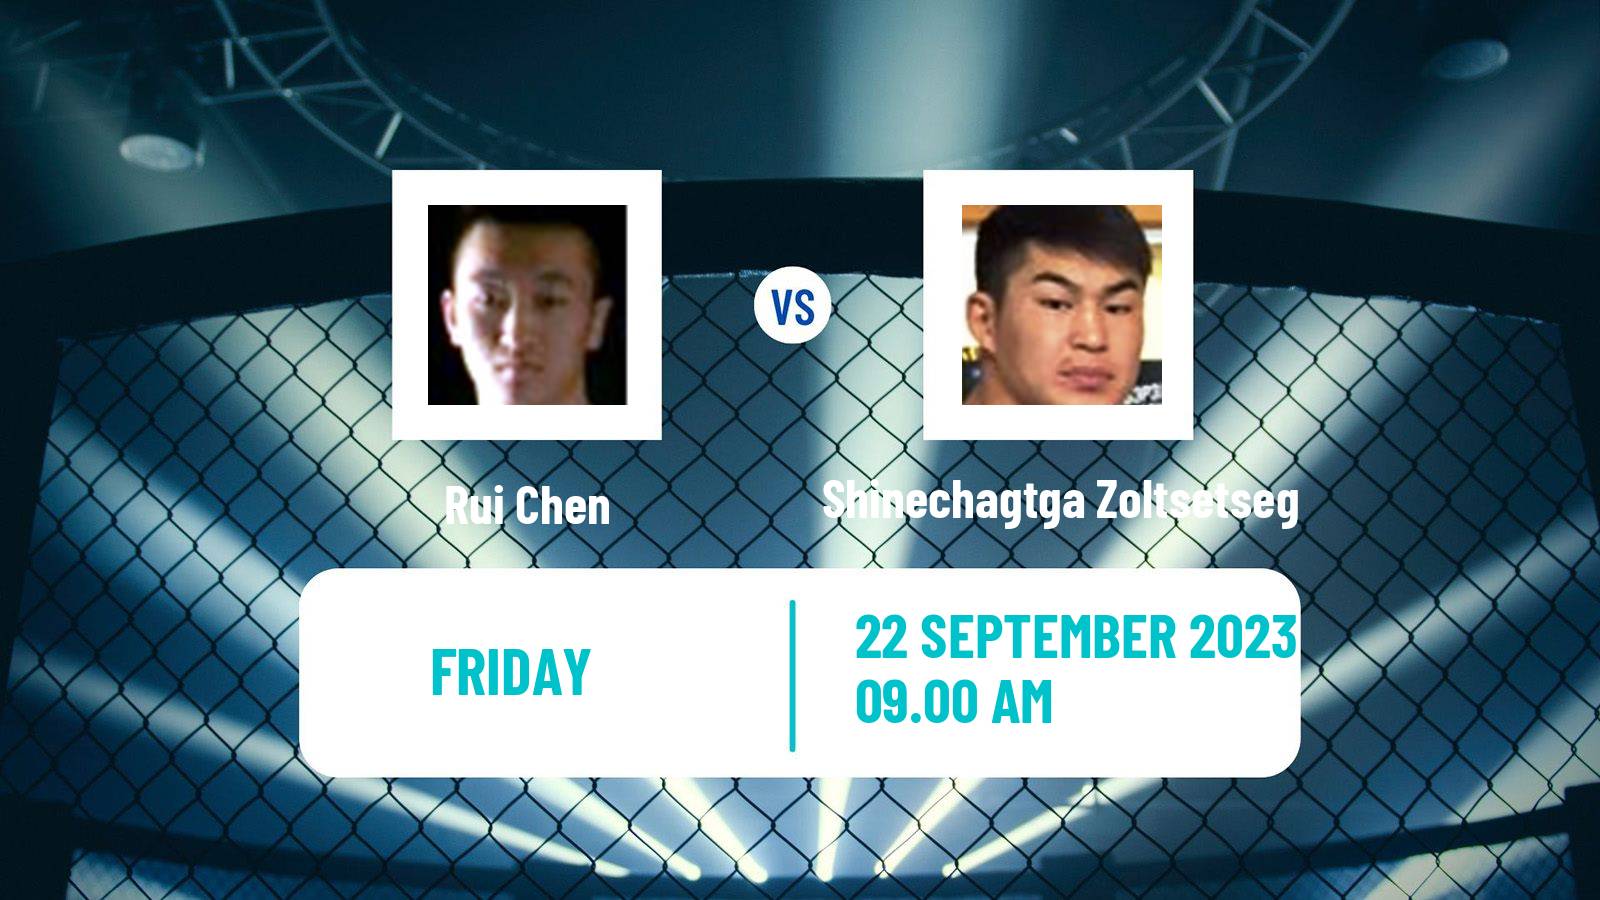 MMA Bantamweight One Championship Men Rui Chen - Shinechagtga Zoltsetseg